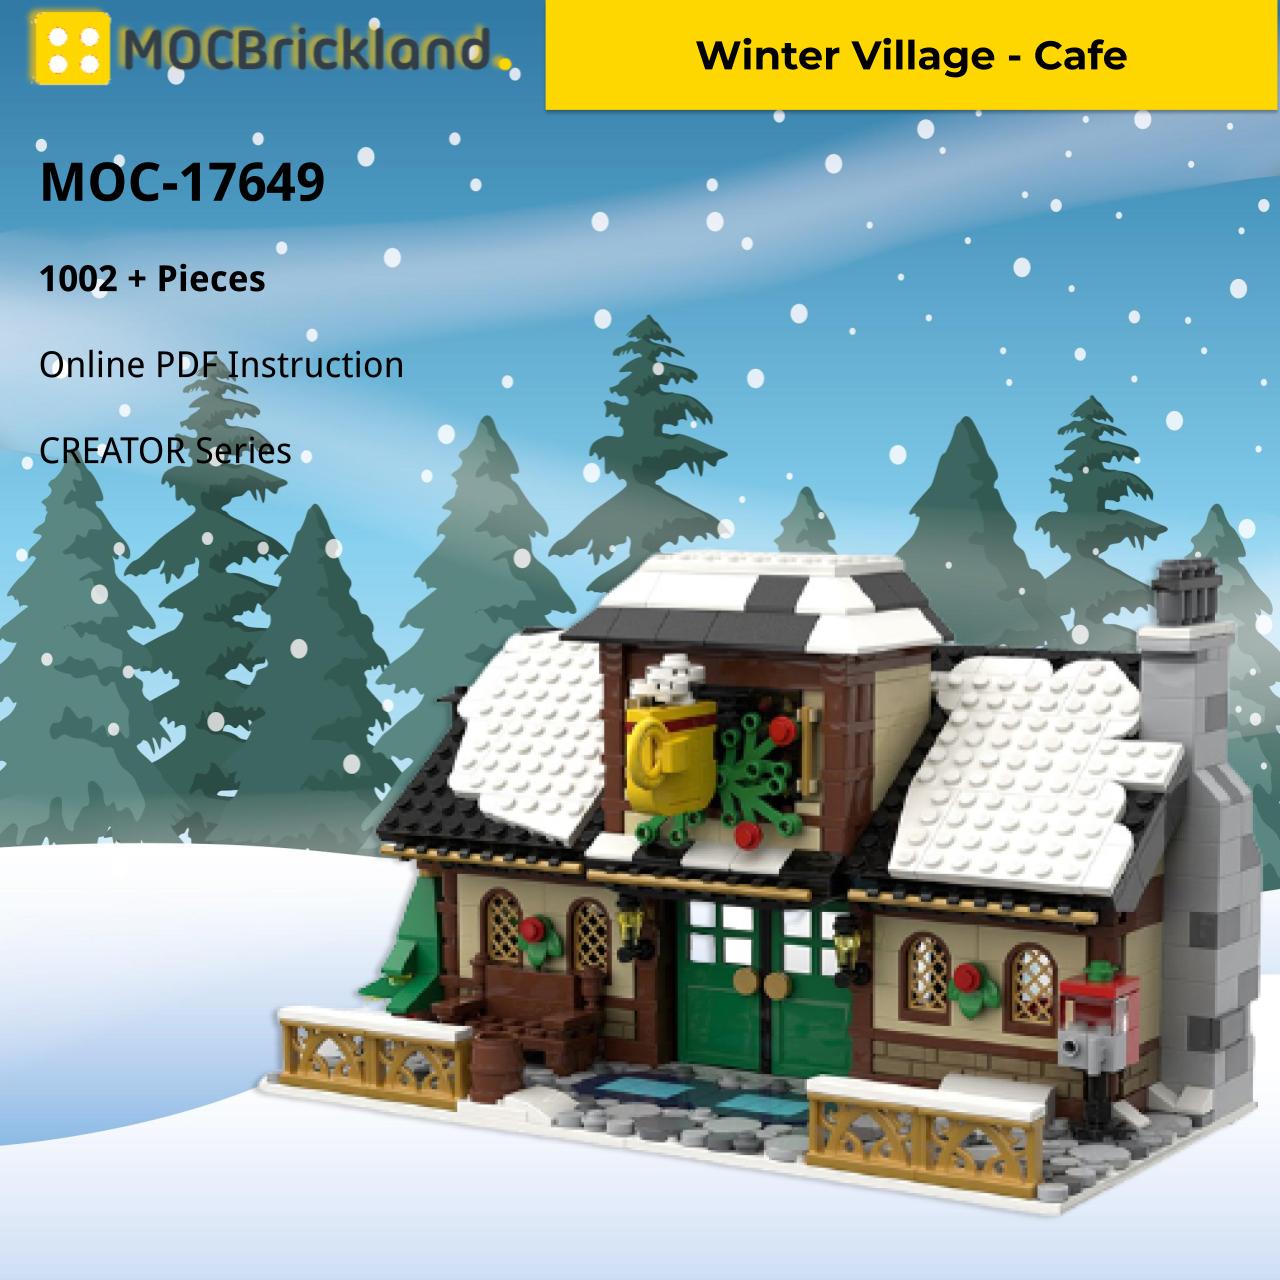 MOCBRICKLAND MOC-17649 Winter Village - Cafe